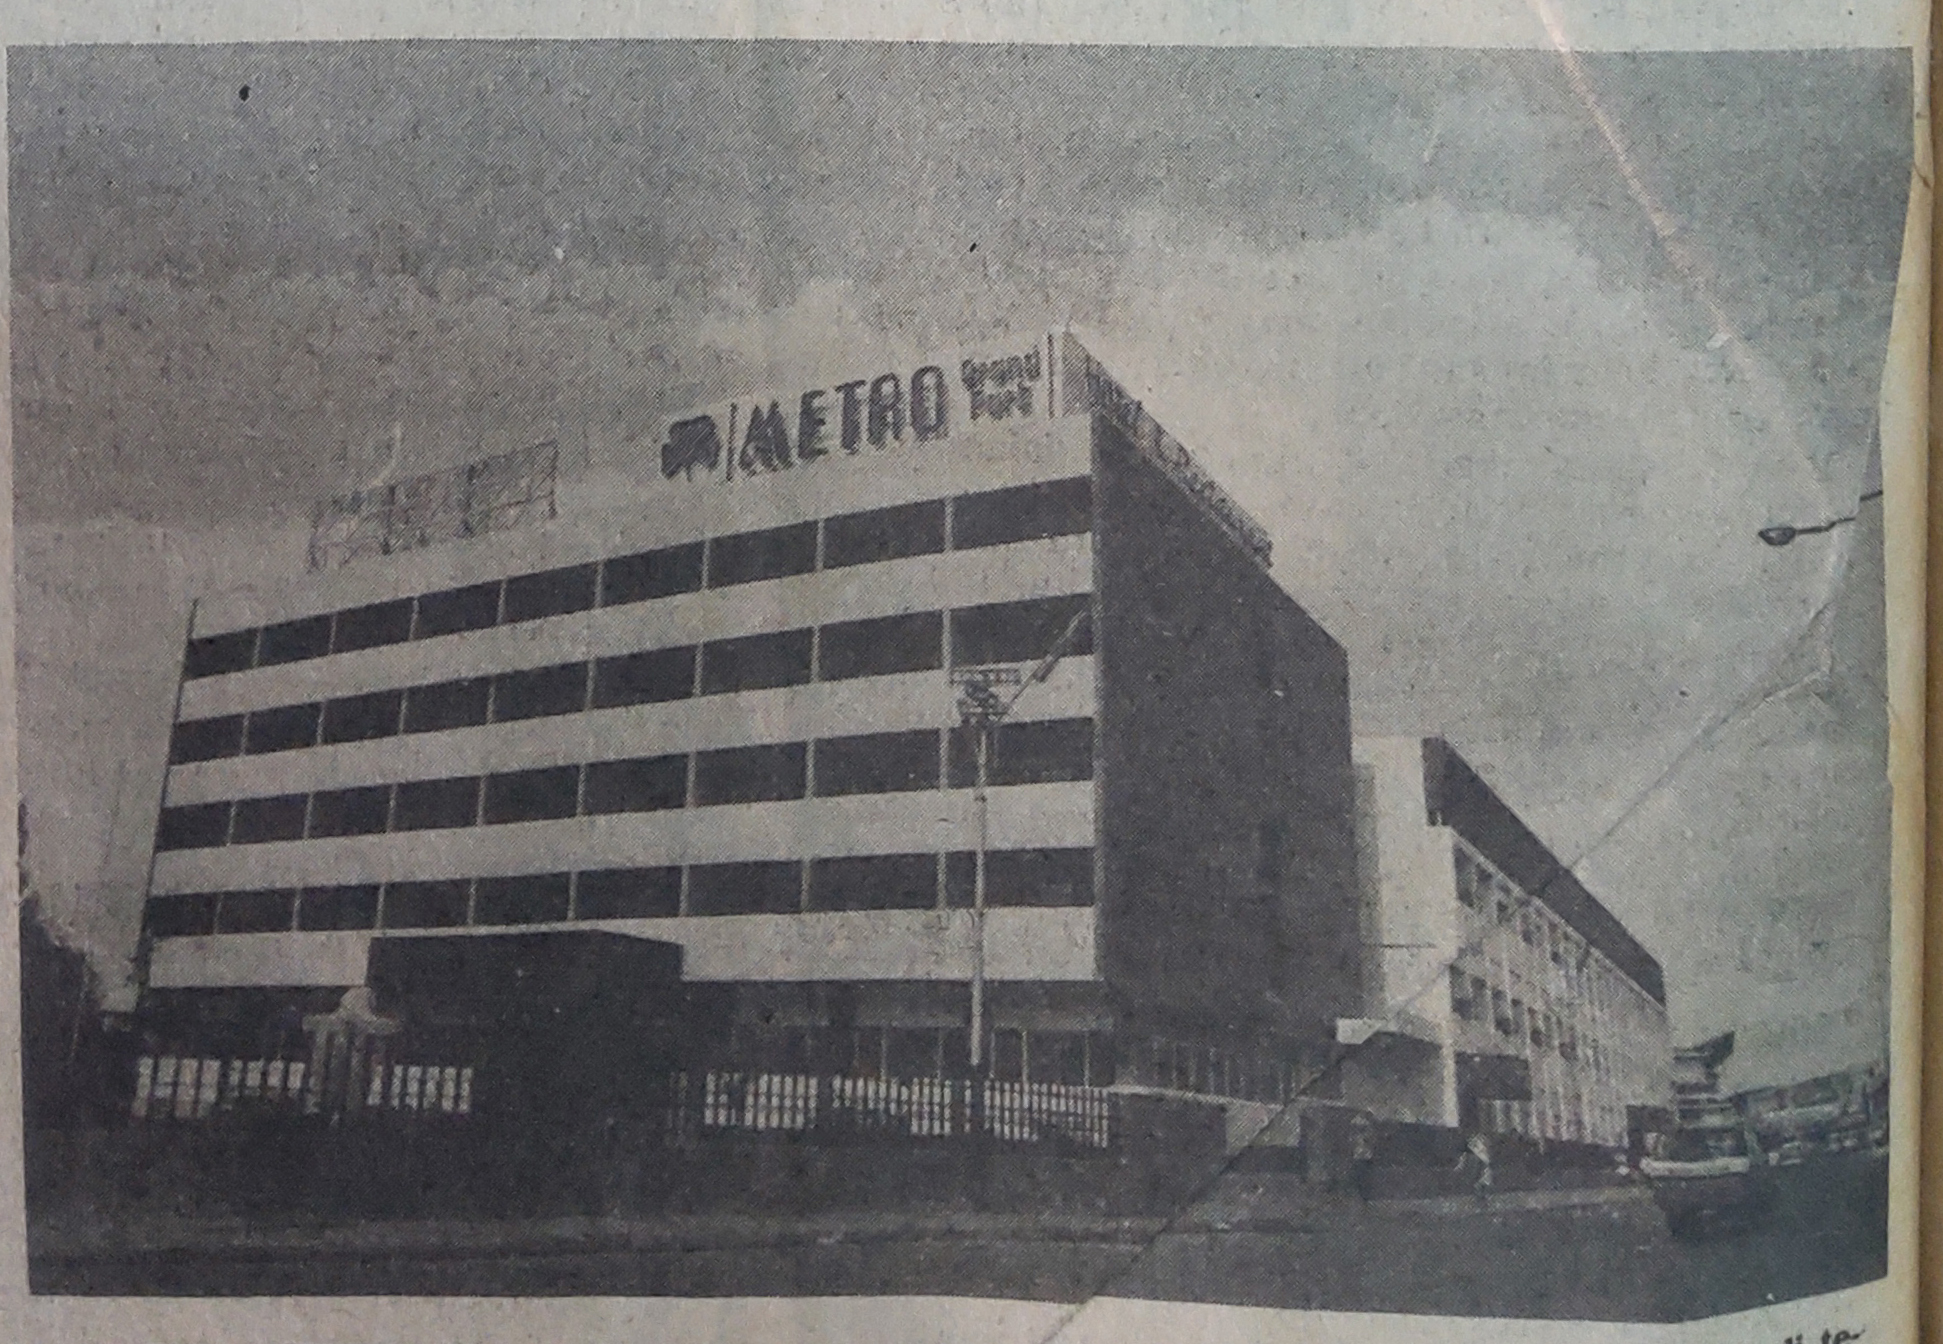 Hotel Metro Park View Semarang, 1977. Semarang tempo dulu 1970an